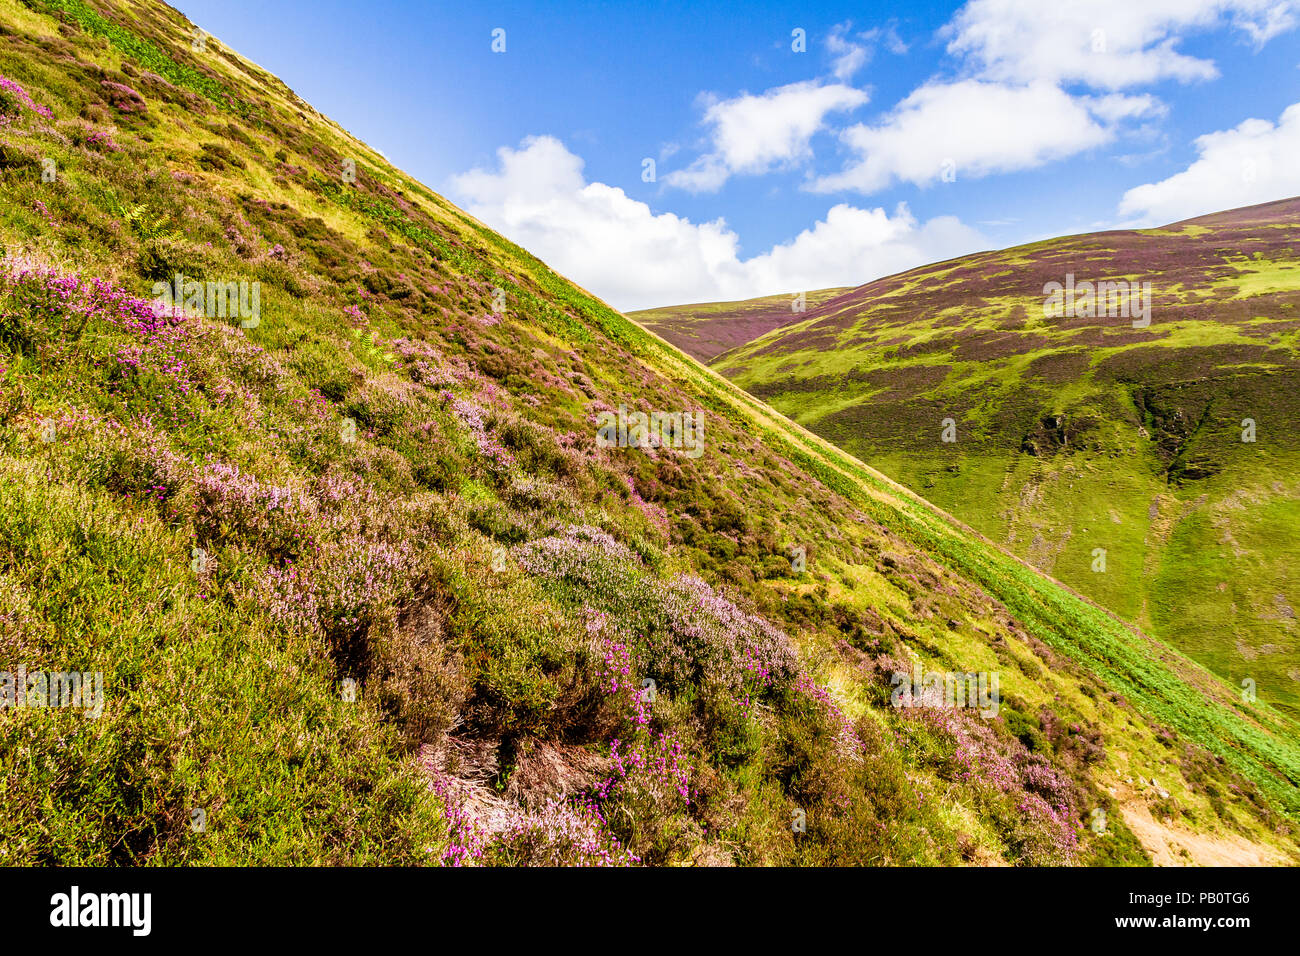 Heather crece en las laderas empinadas que conducen a Loch Skeen en Grey Mare's Tail cascada, Dumfries y Galloway, Escocia, Reino Unido. Foto de stock